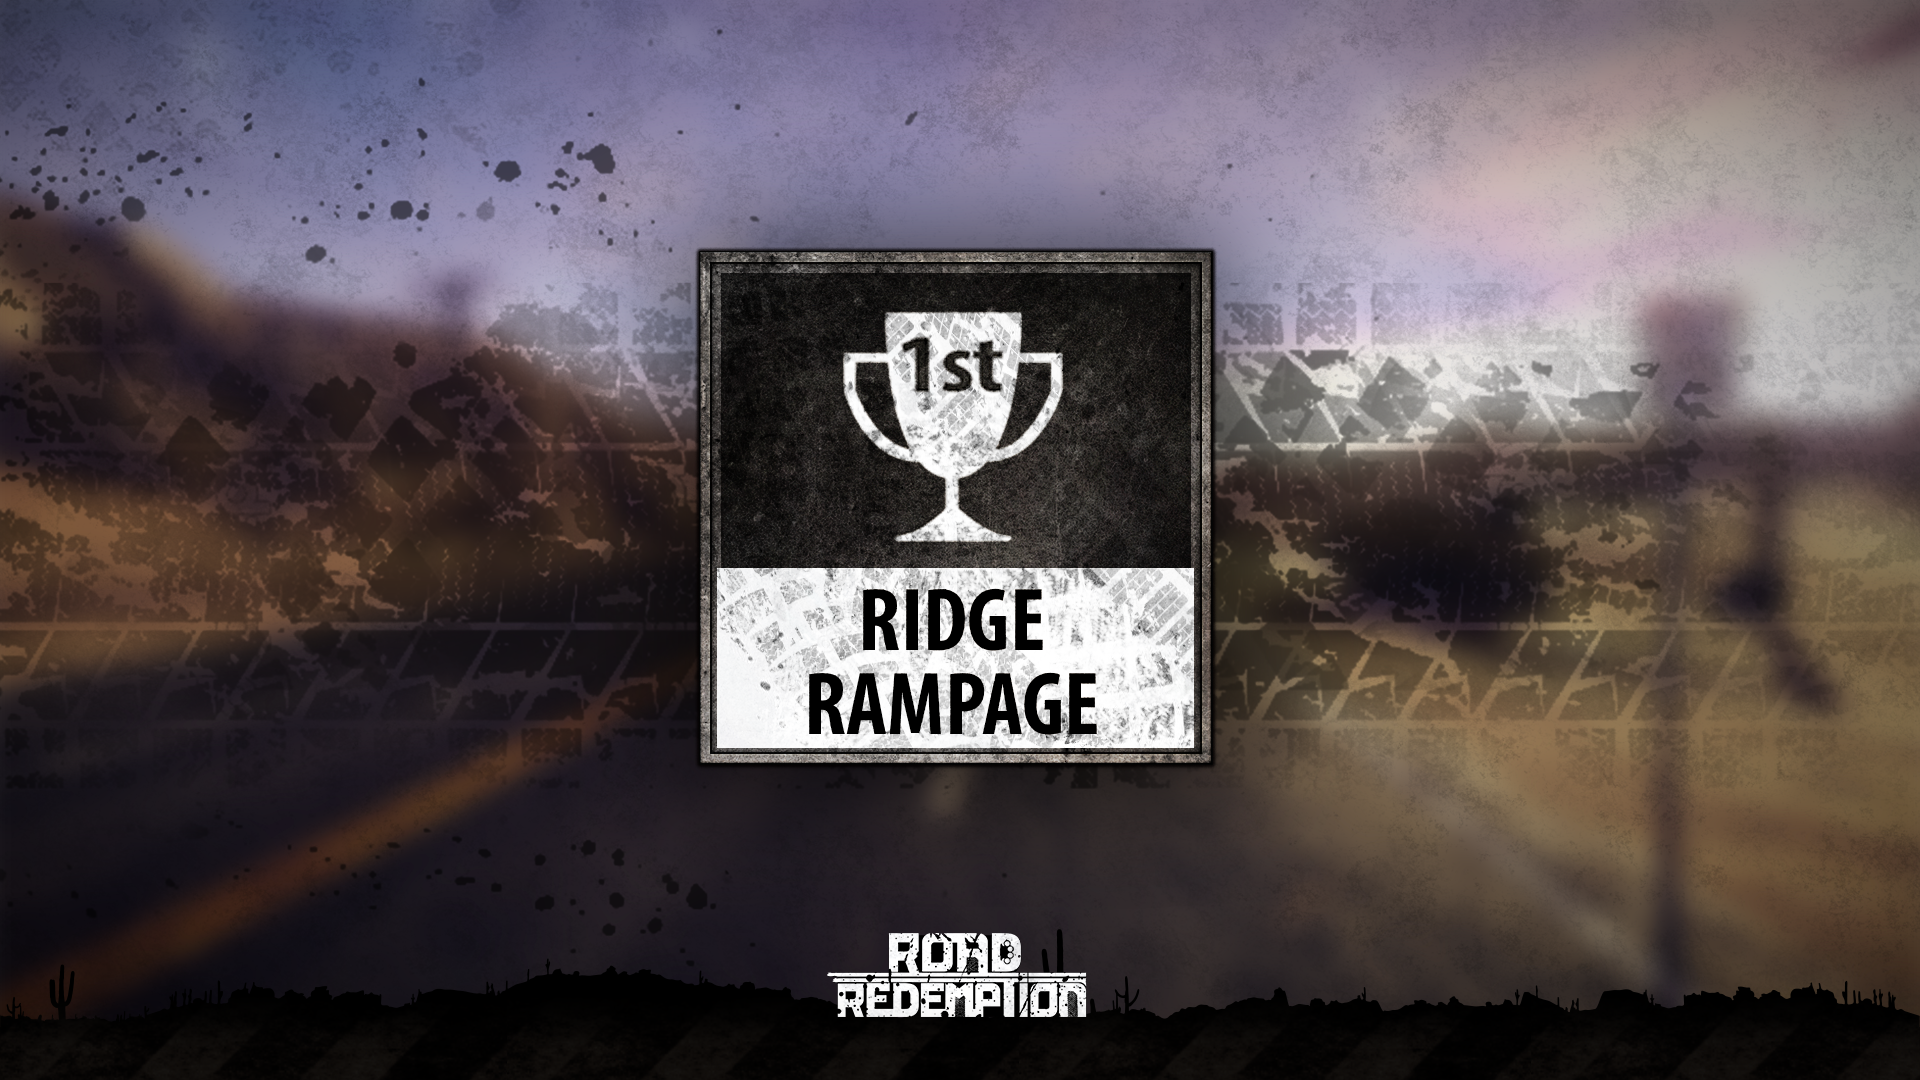 Ridge Rampage Gold!